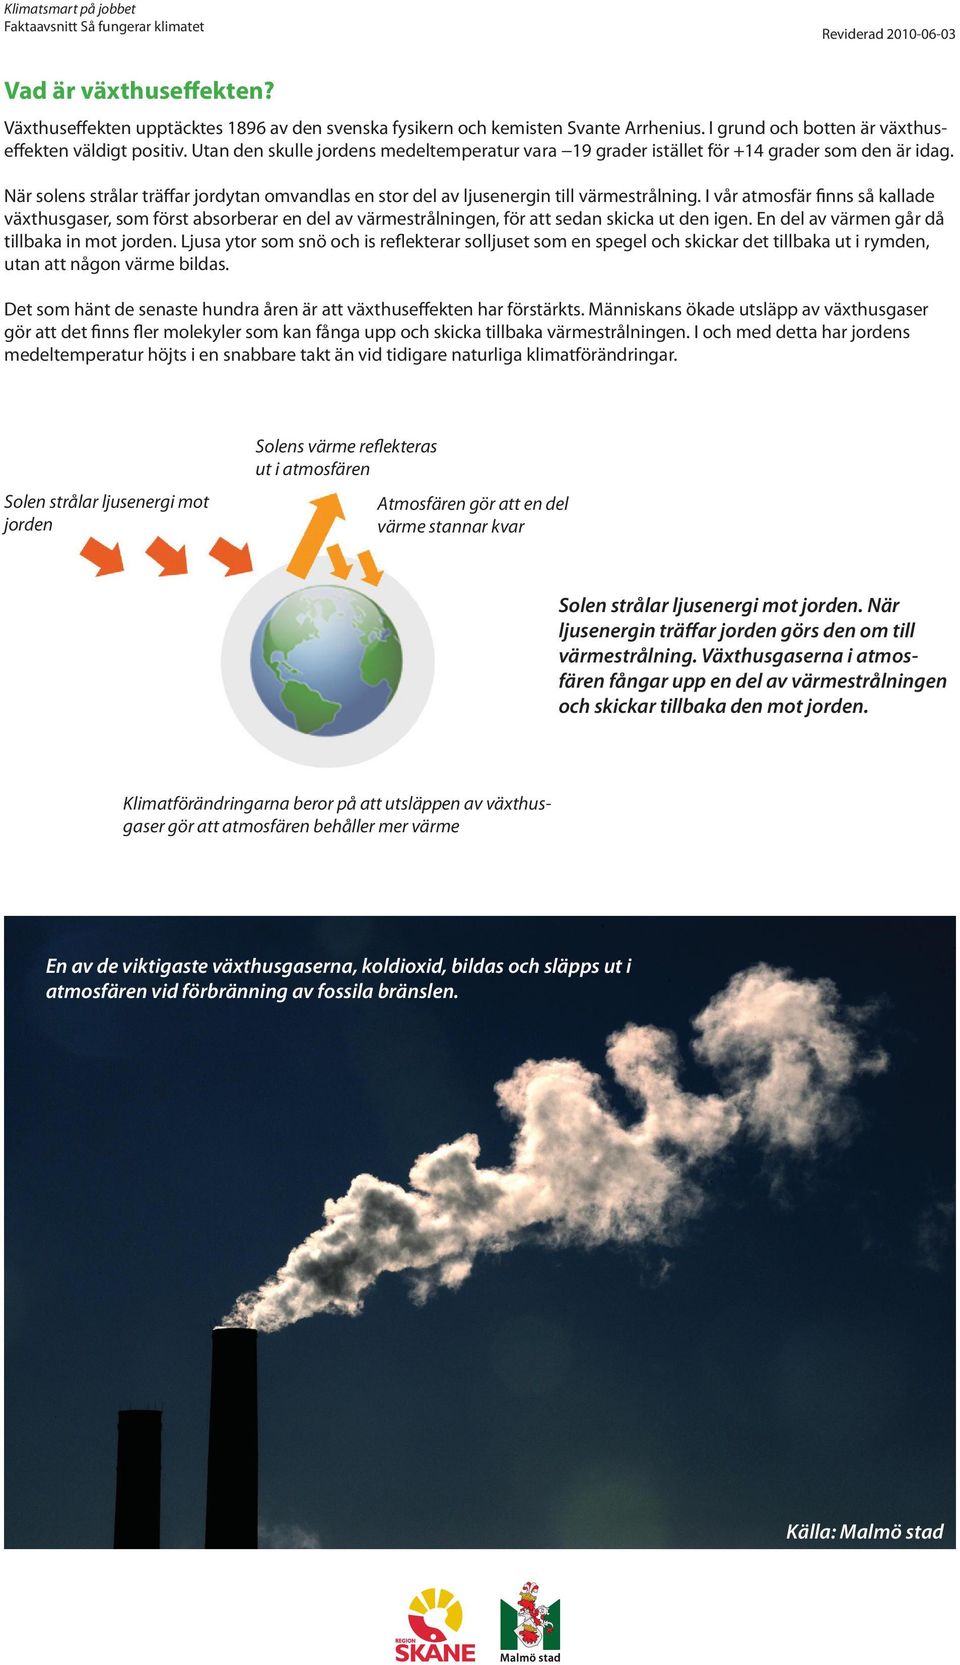 I vår atmosfär finns så kallade växthusgaser, som först absorberar en del av värmestrålningen, för att sedan skicka ut den igen. En del av värmen går då tillbaka in mot jorden.